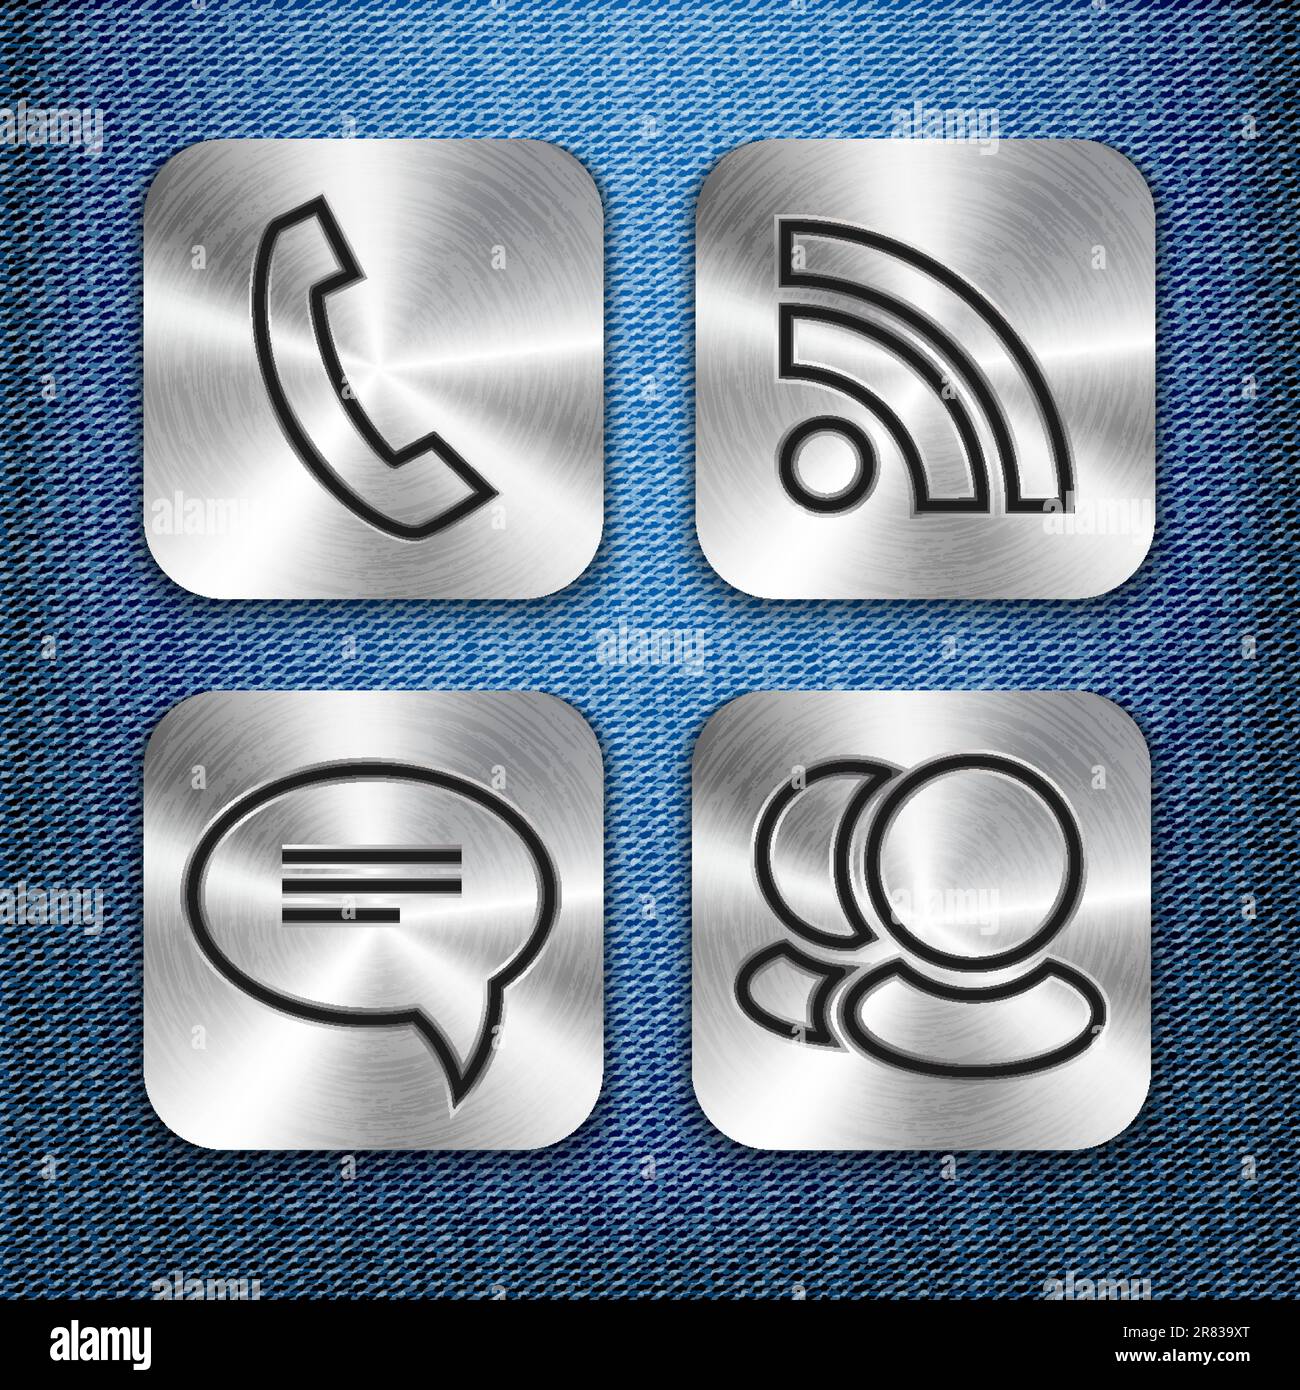 Icone dell'app Communication in metallo spazzolato su texture denim. Illustrazione vettoriale Illustrazione Vettoriale